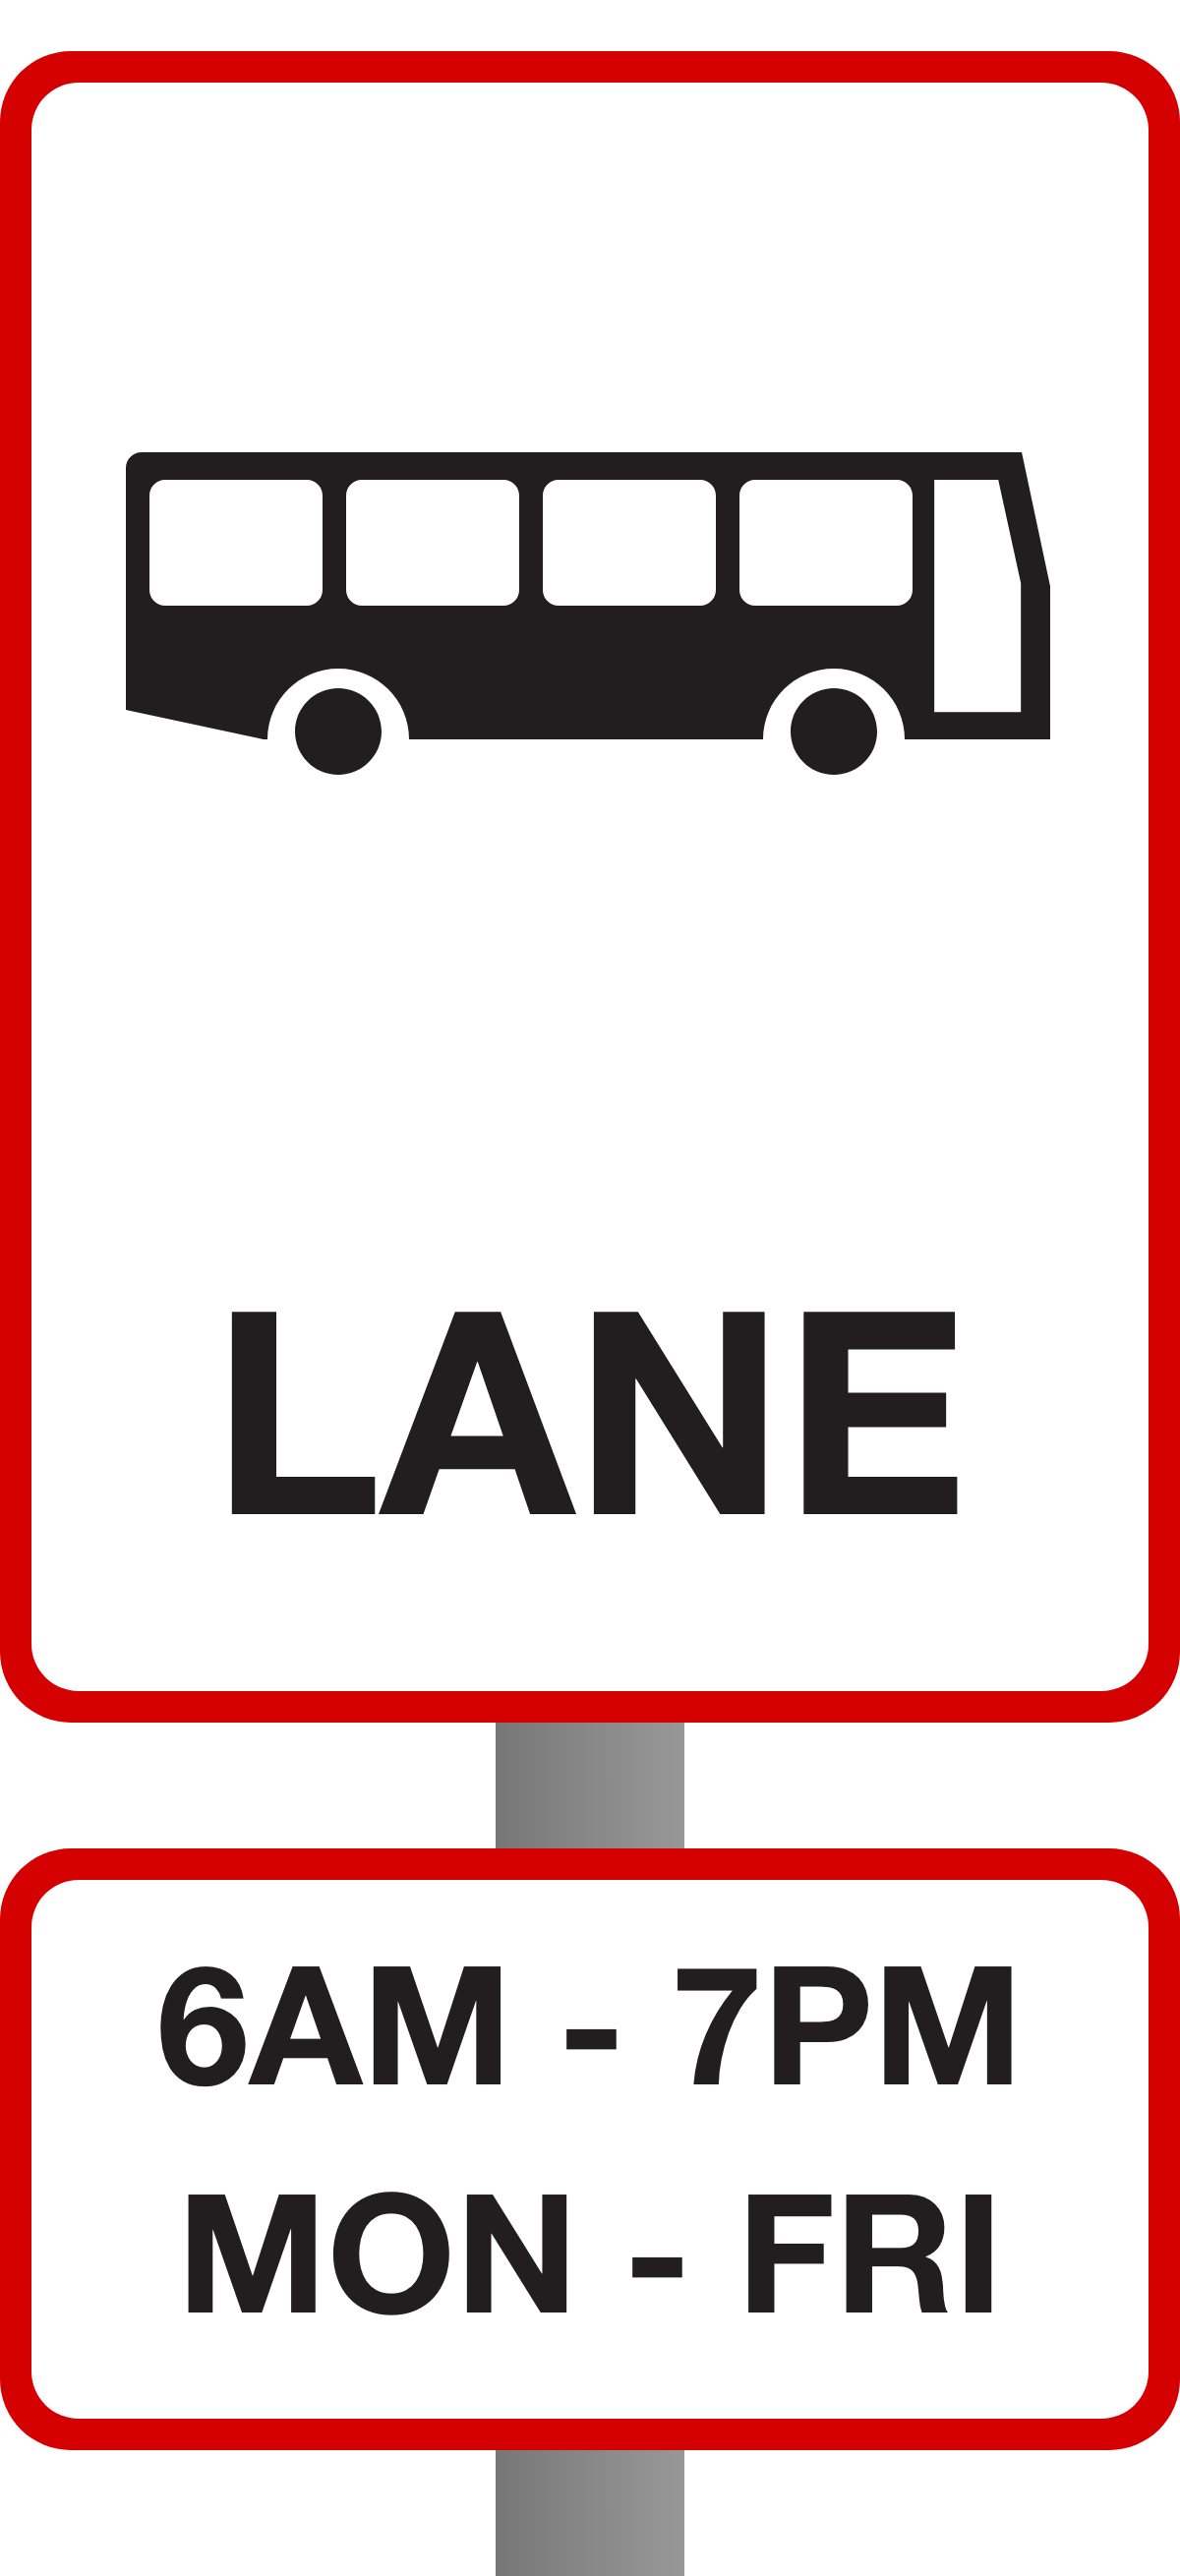 Bus lane Parking Sign